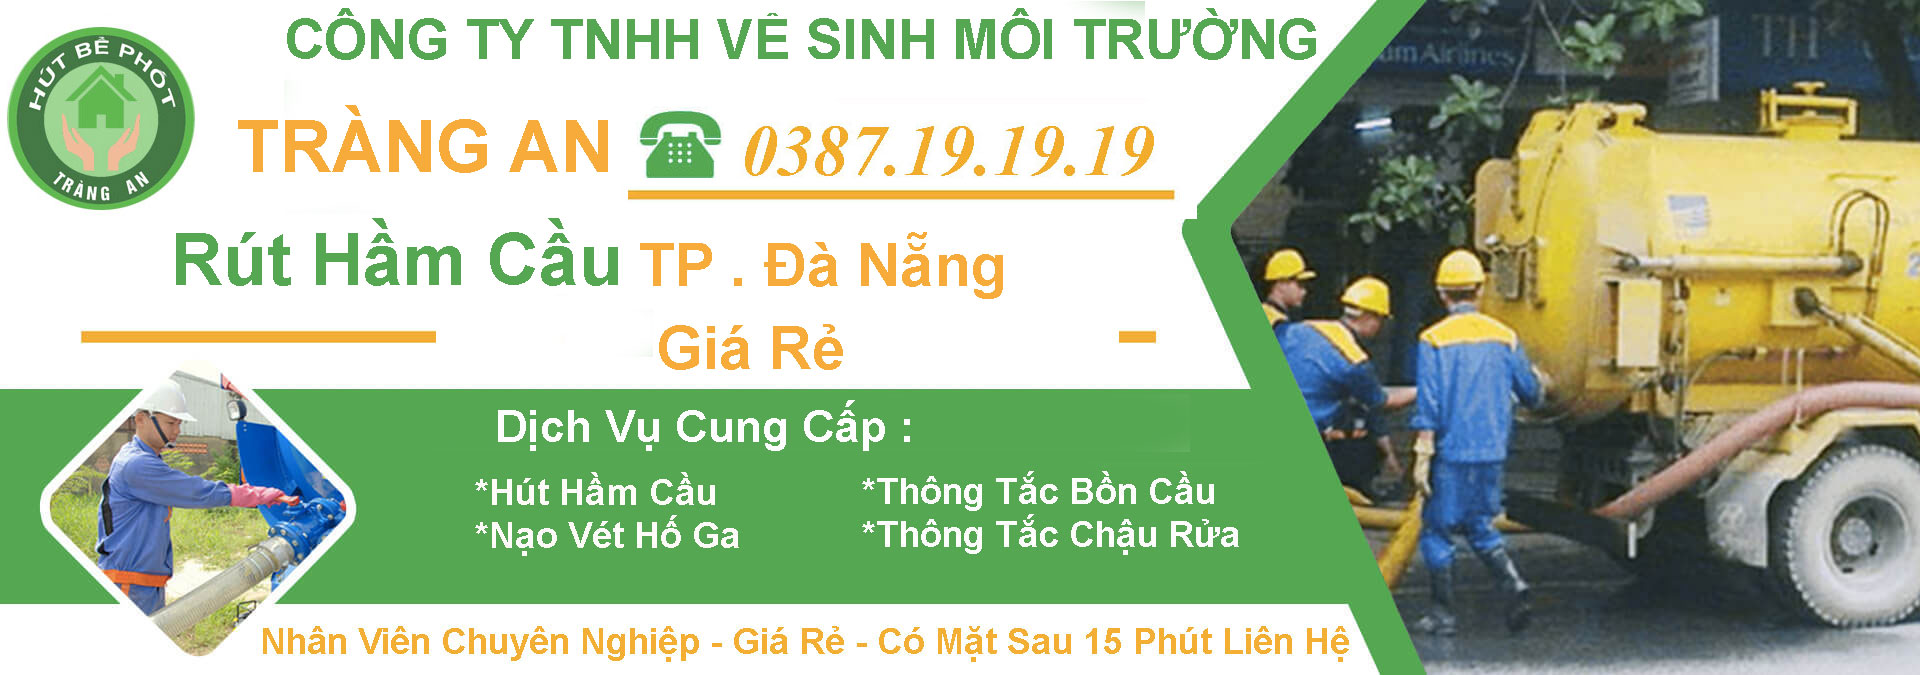 Hut Ham Cau Tp Da Nang